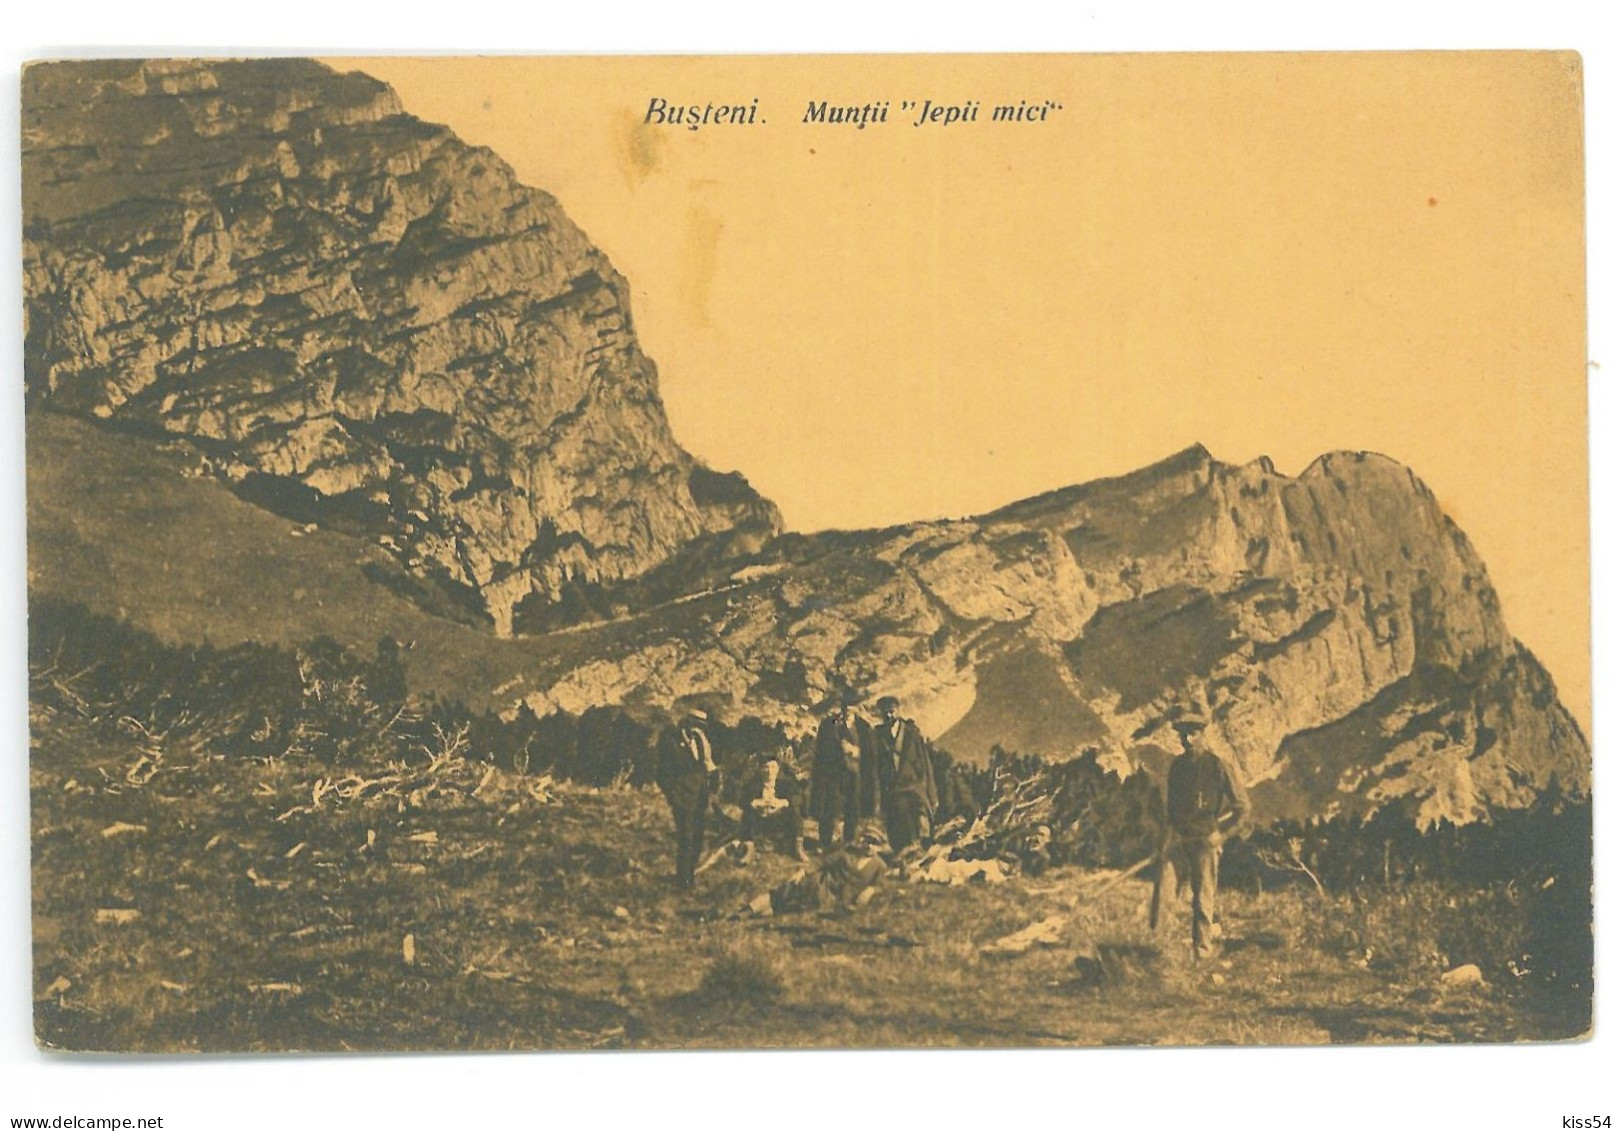 RO - 25190 BUSTENI, Prahova, Jepii Mici Mountain, Romania - Old Postcard - Unused - Rumänien